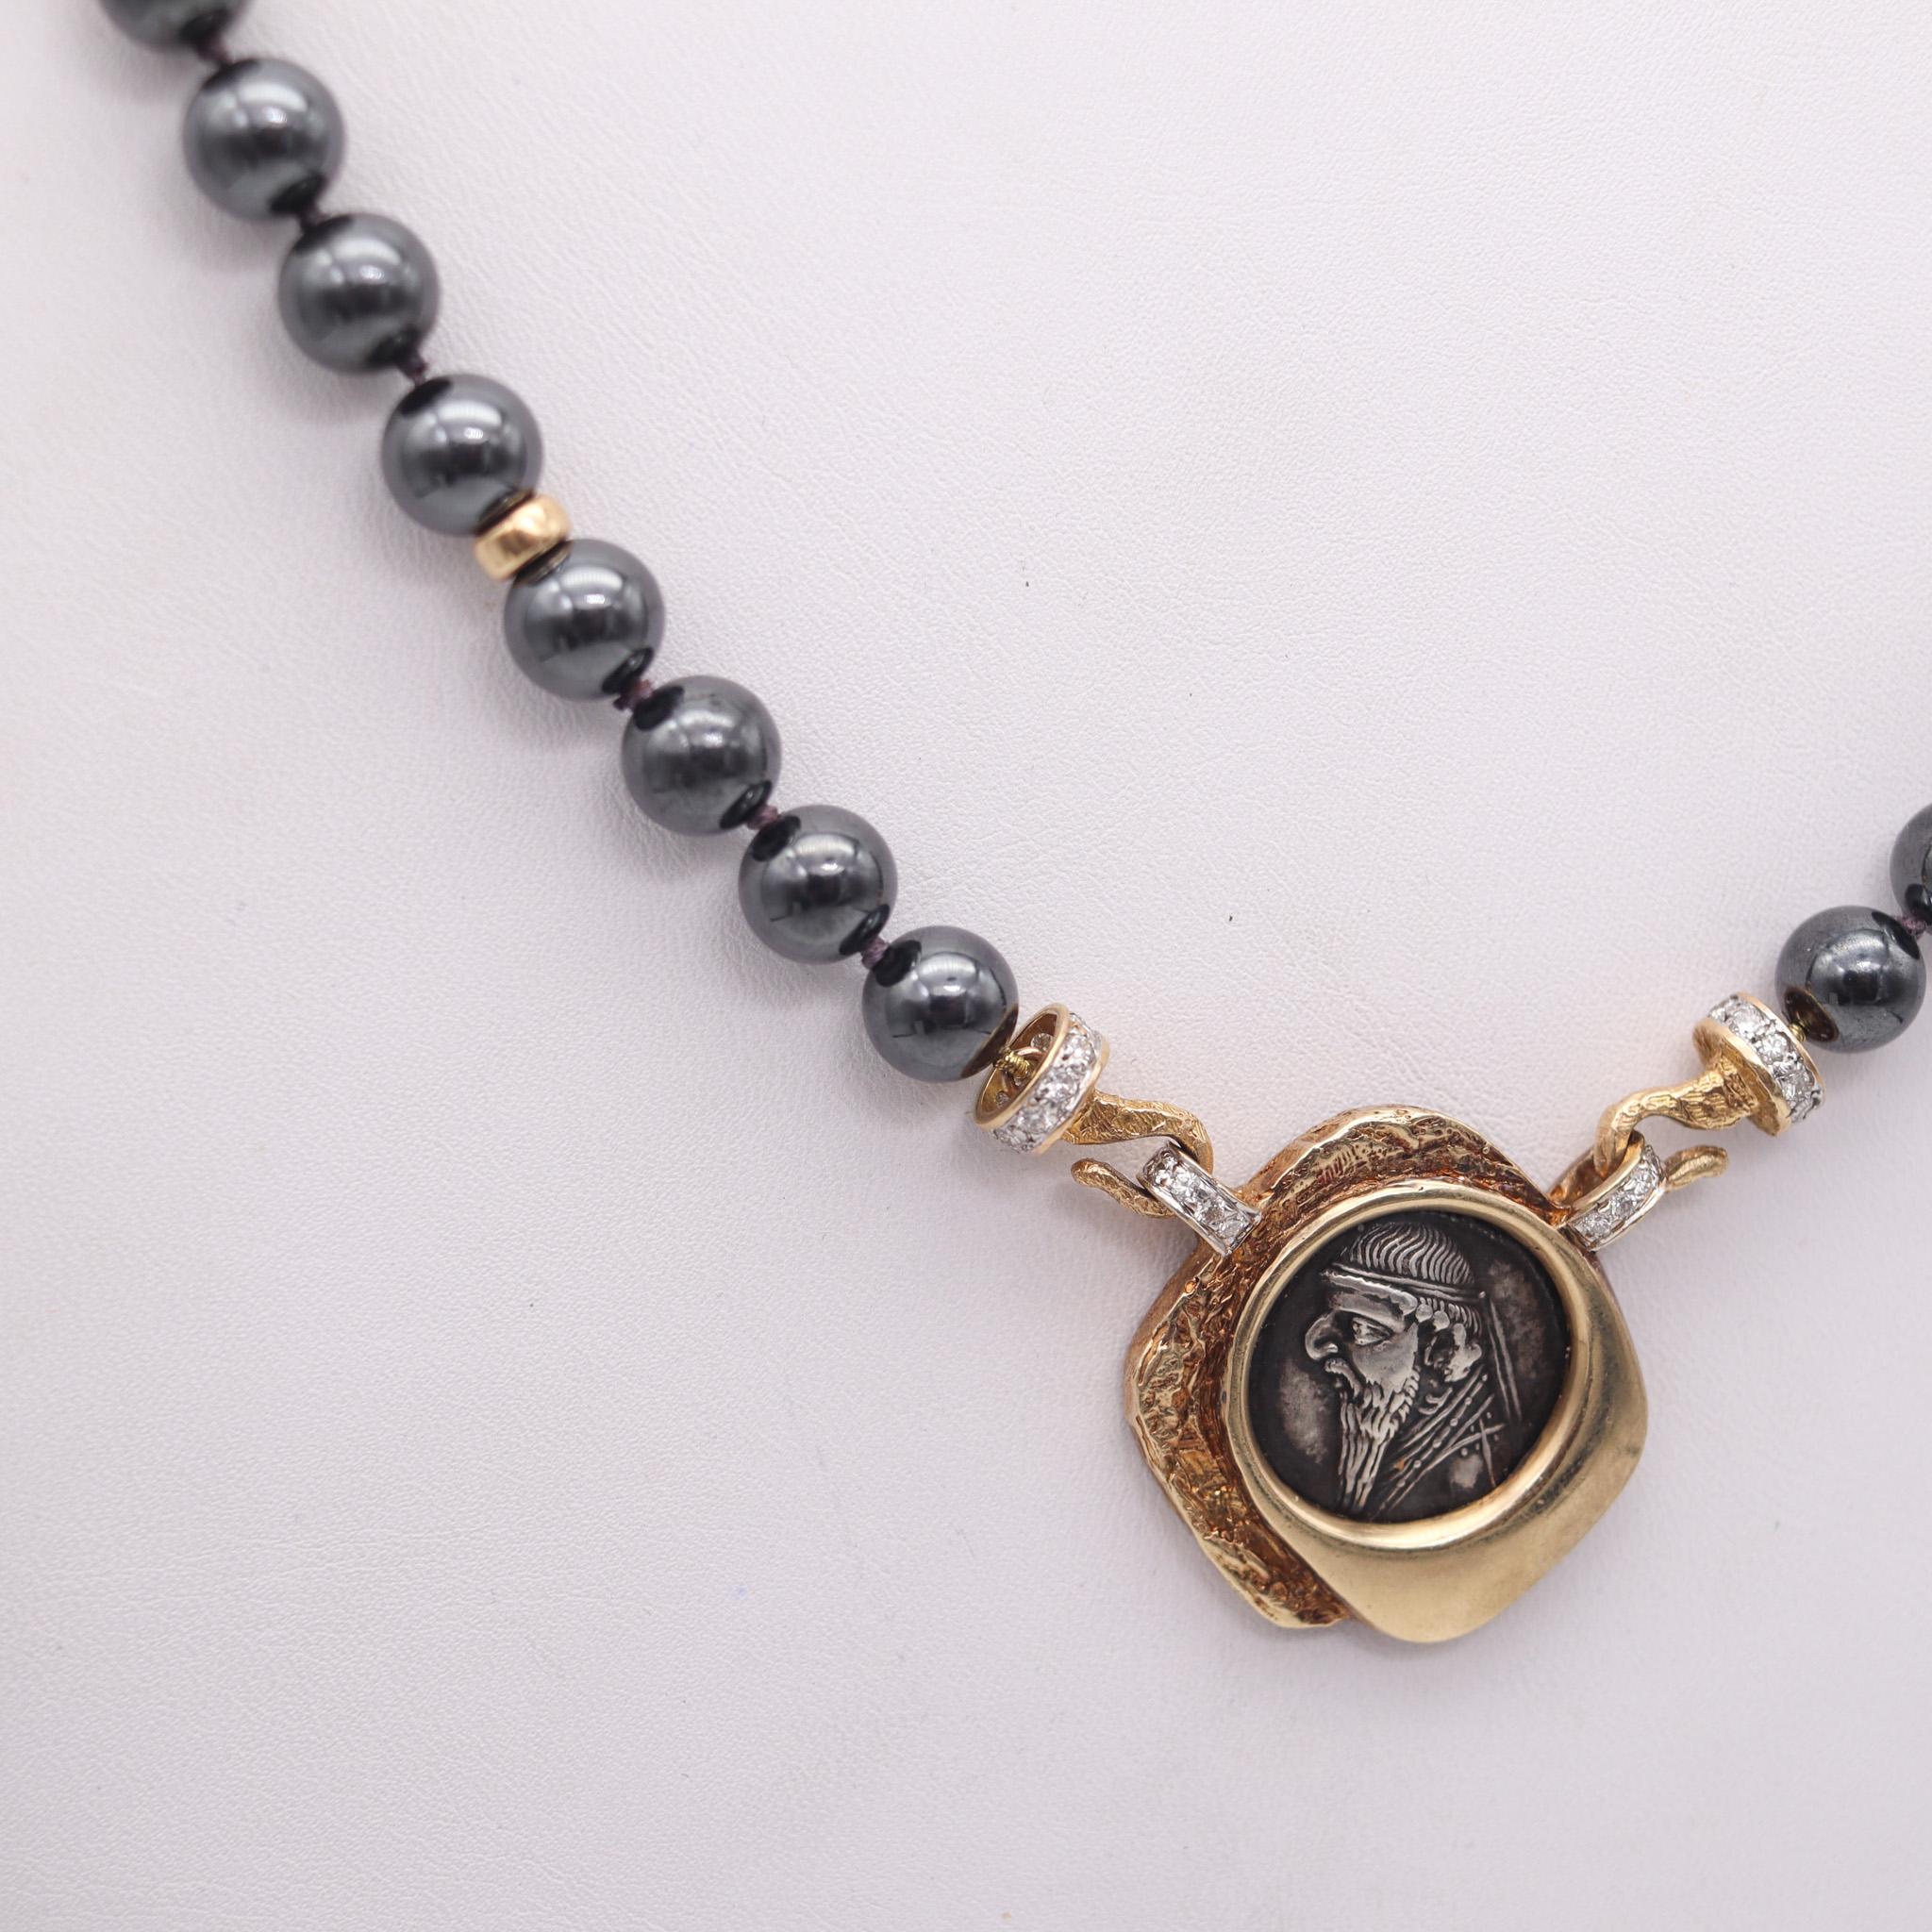 Halskette mit einer 123 v. Chr. antiken Münze aus dem Partherreich.

Wunderschönes Münzcollier, bestückt mit einer echten Silbermünze aus dem Parthischen Reich. Die Münze ist eine Silberdrachme von 19,5 mm aus der Zeit des Königs Mithradates II,